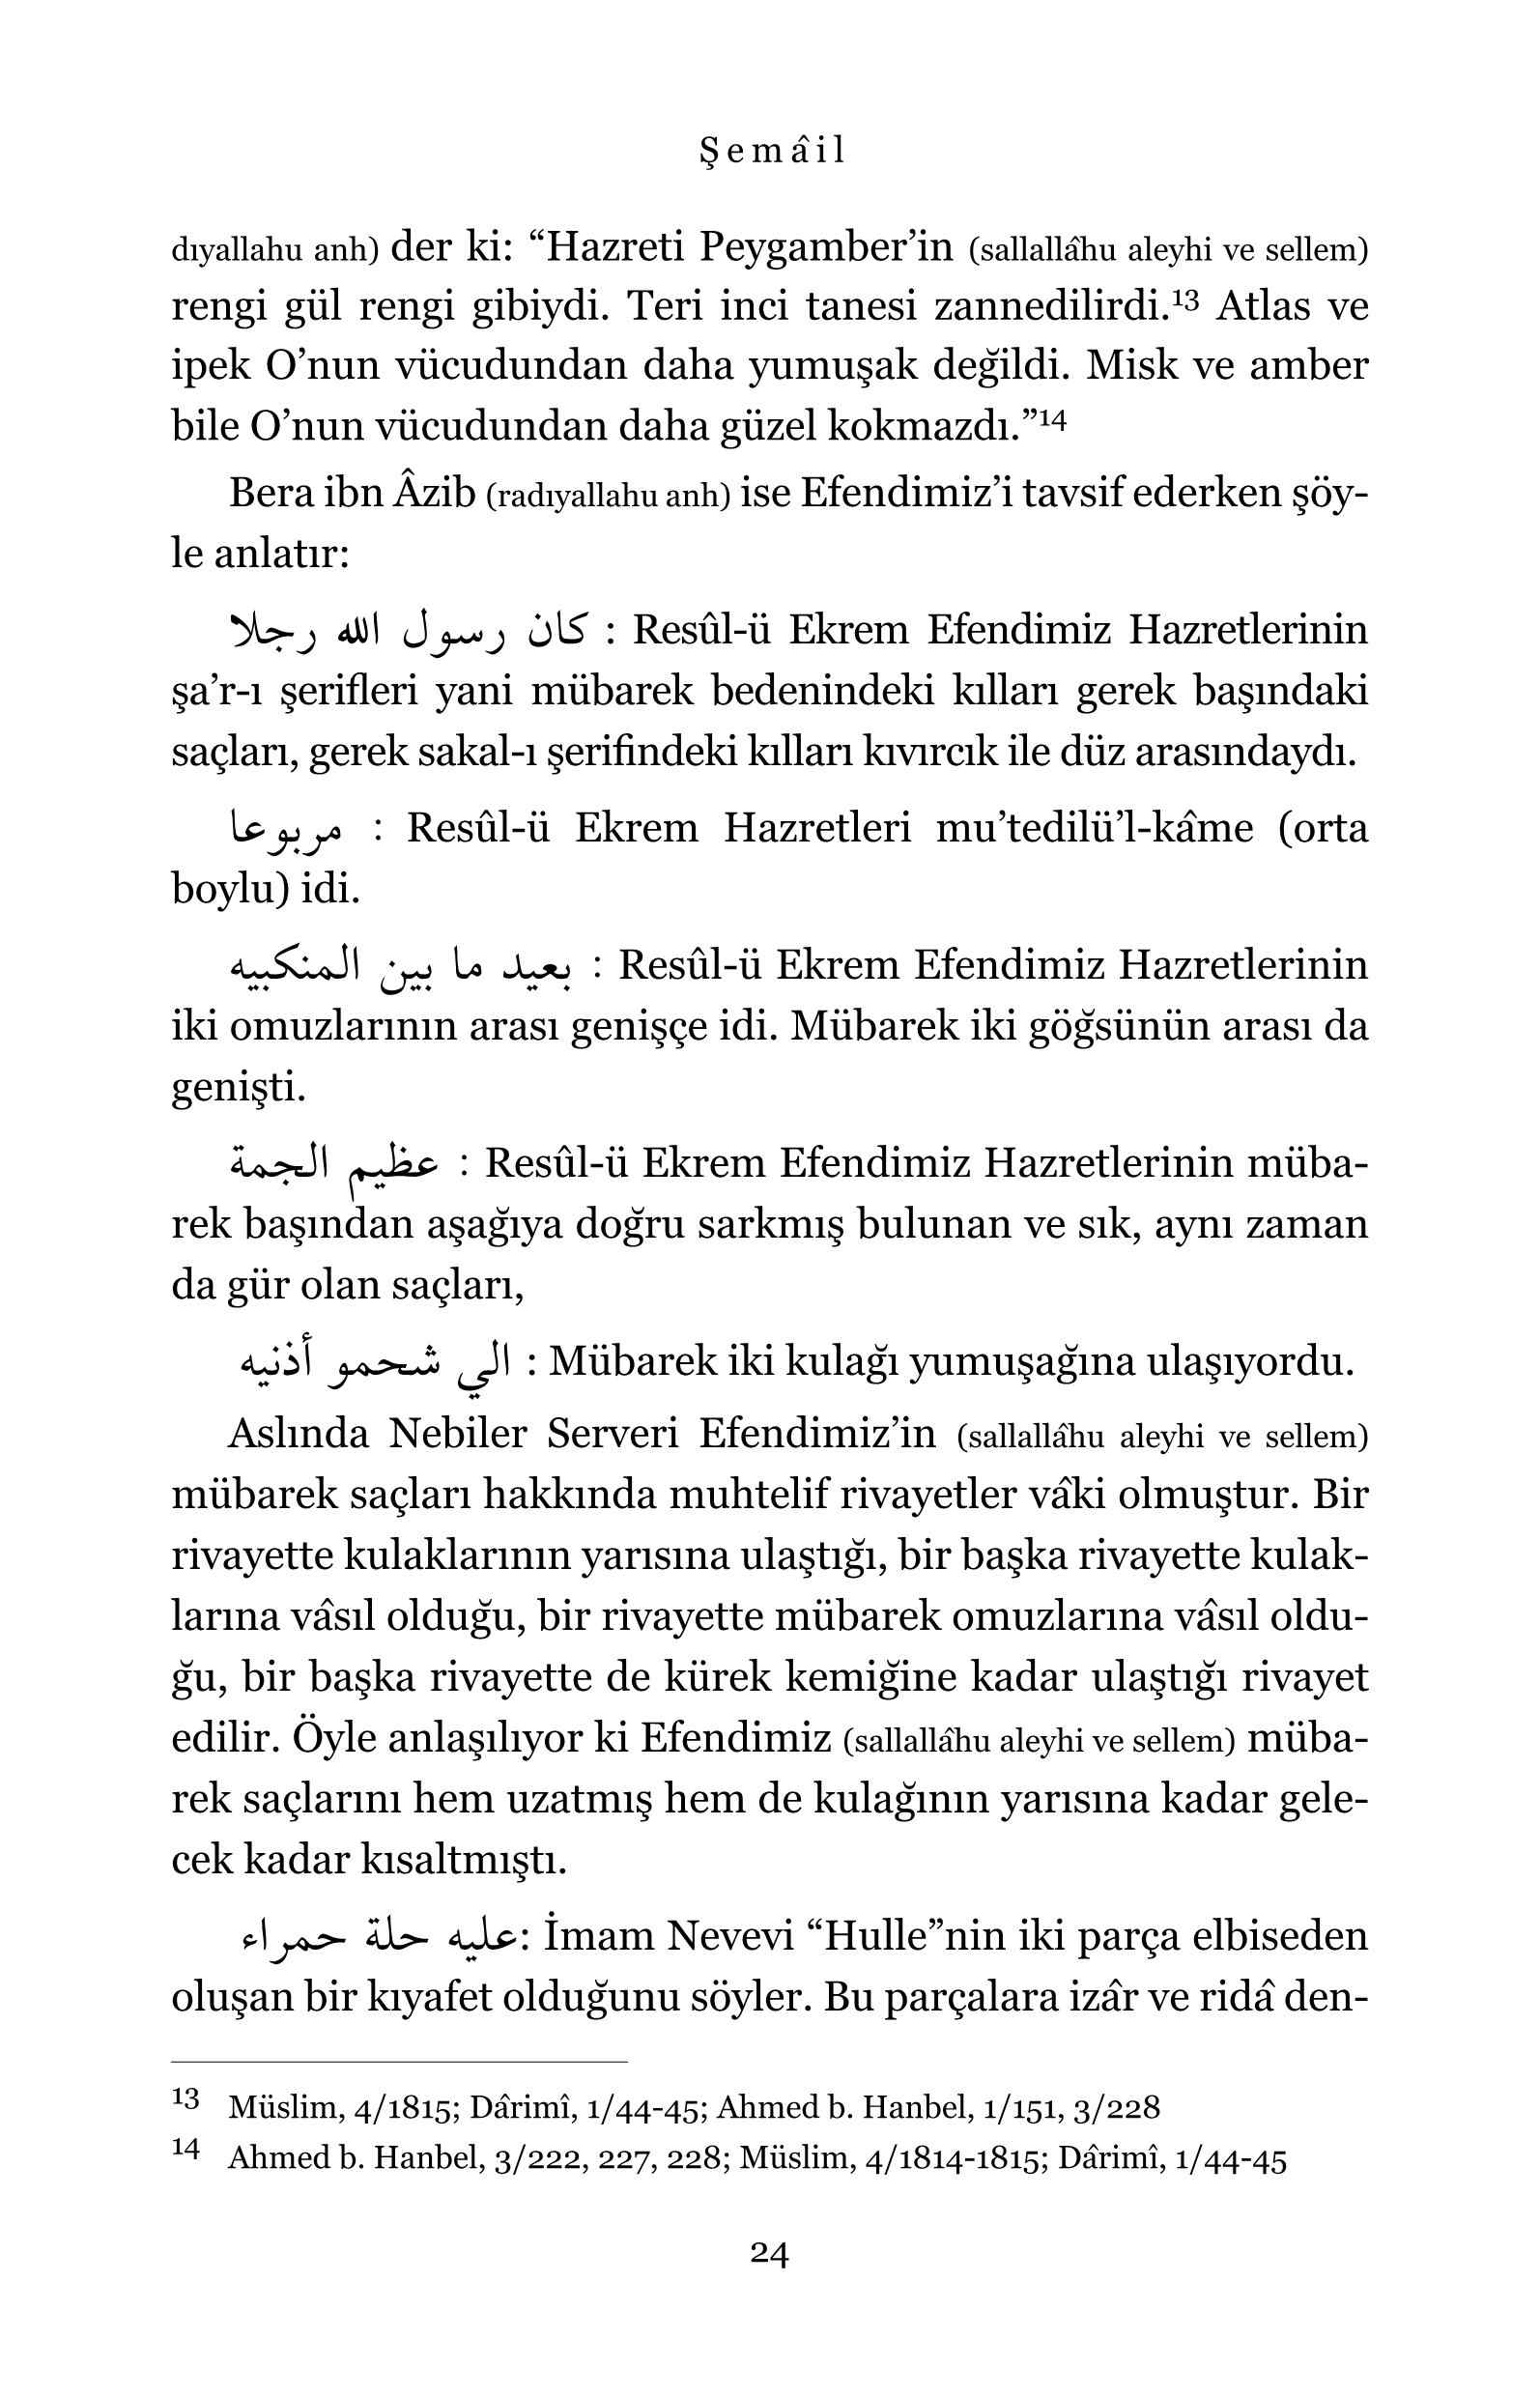 Faruk Vural - Semail - IsikYayinlari.pdf, 151-Sayfa 